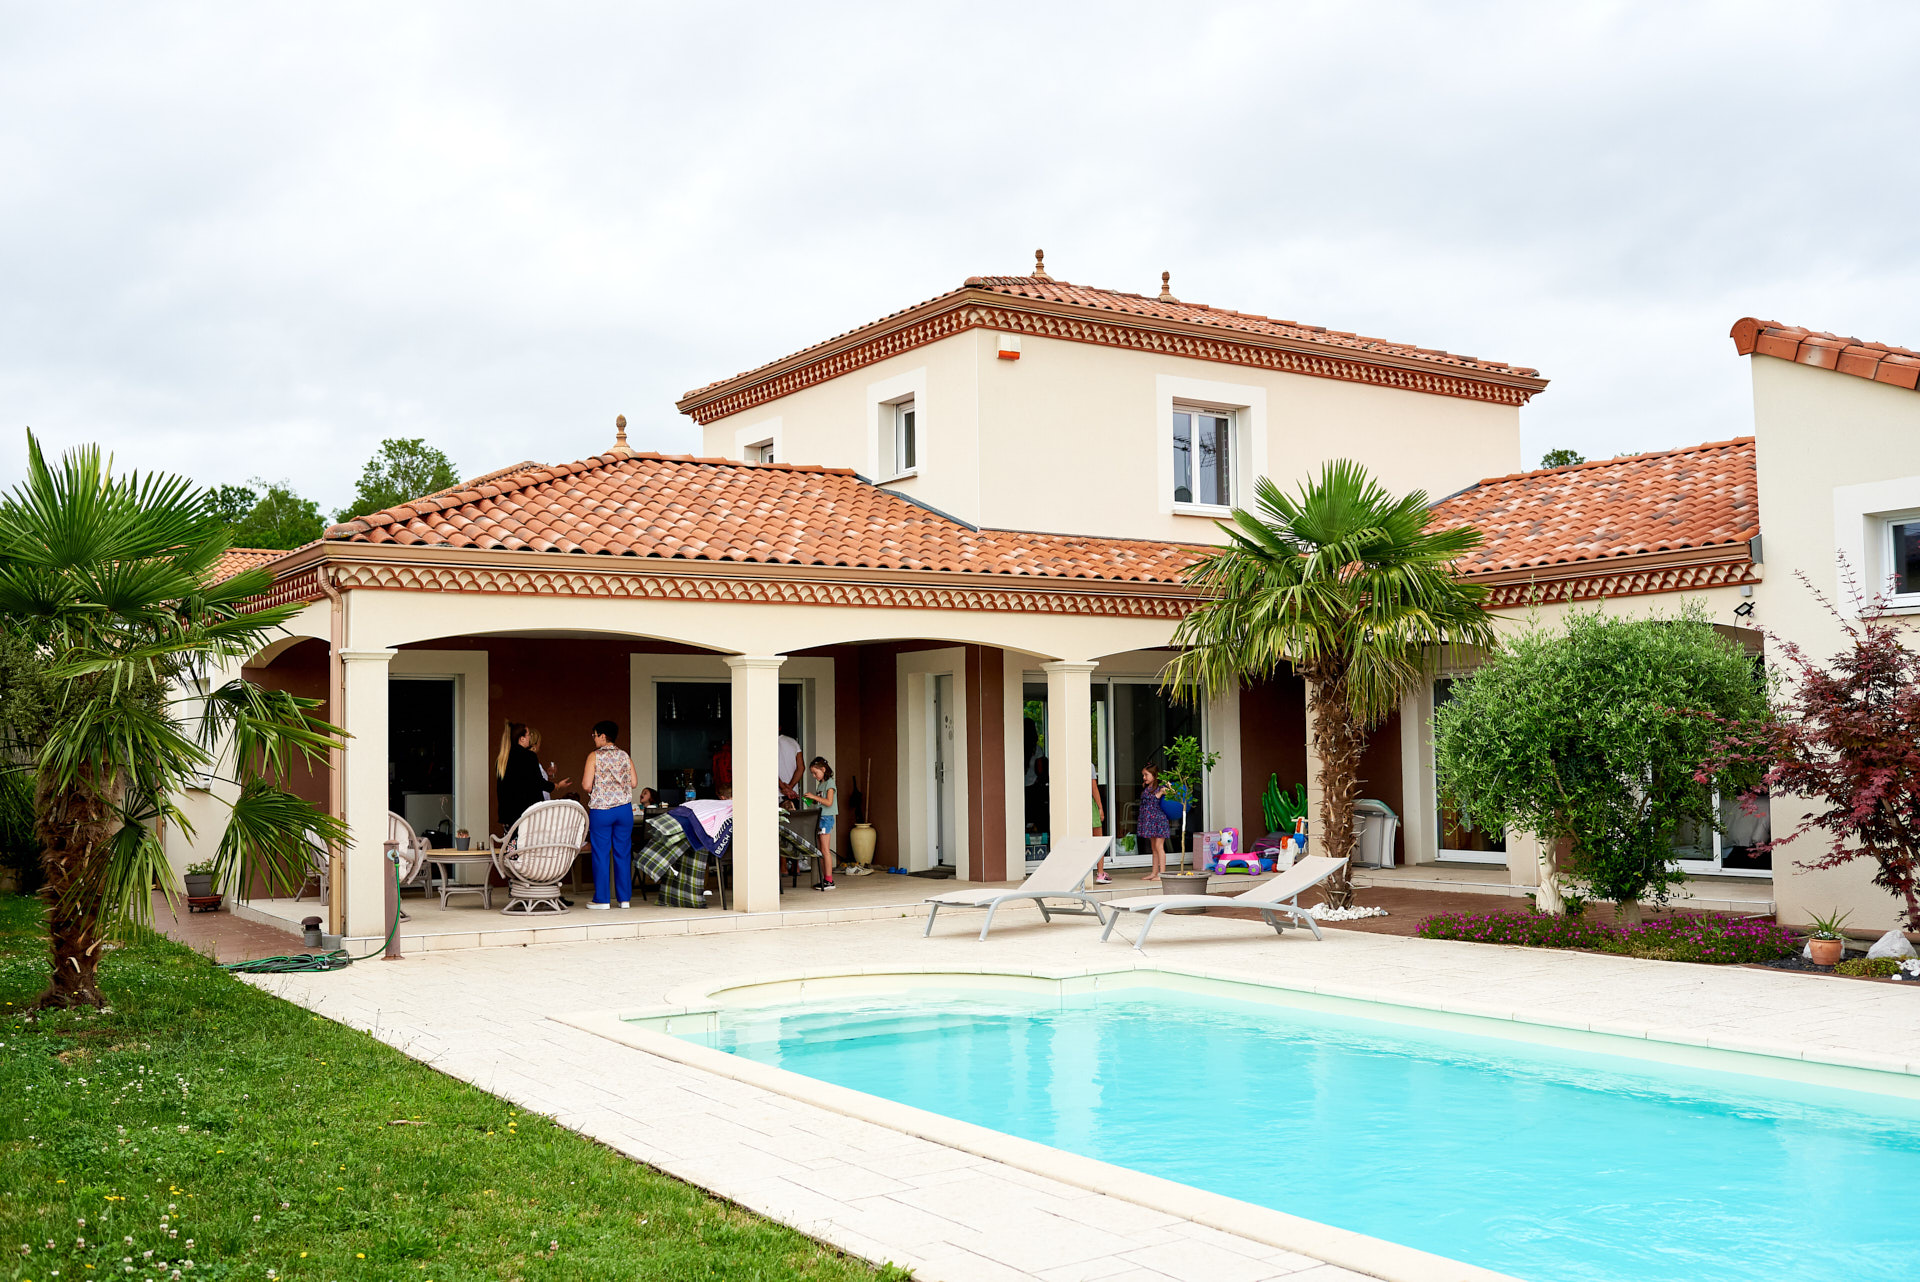 Maison des parents à Issoire avec piscine